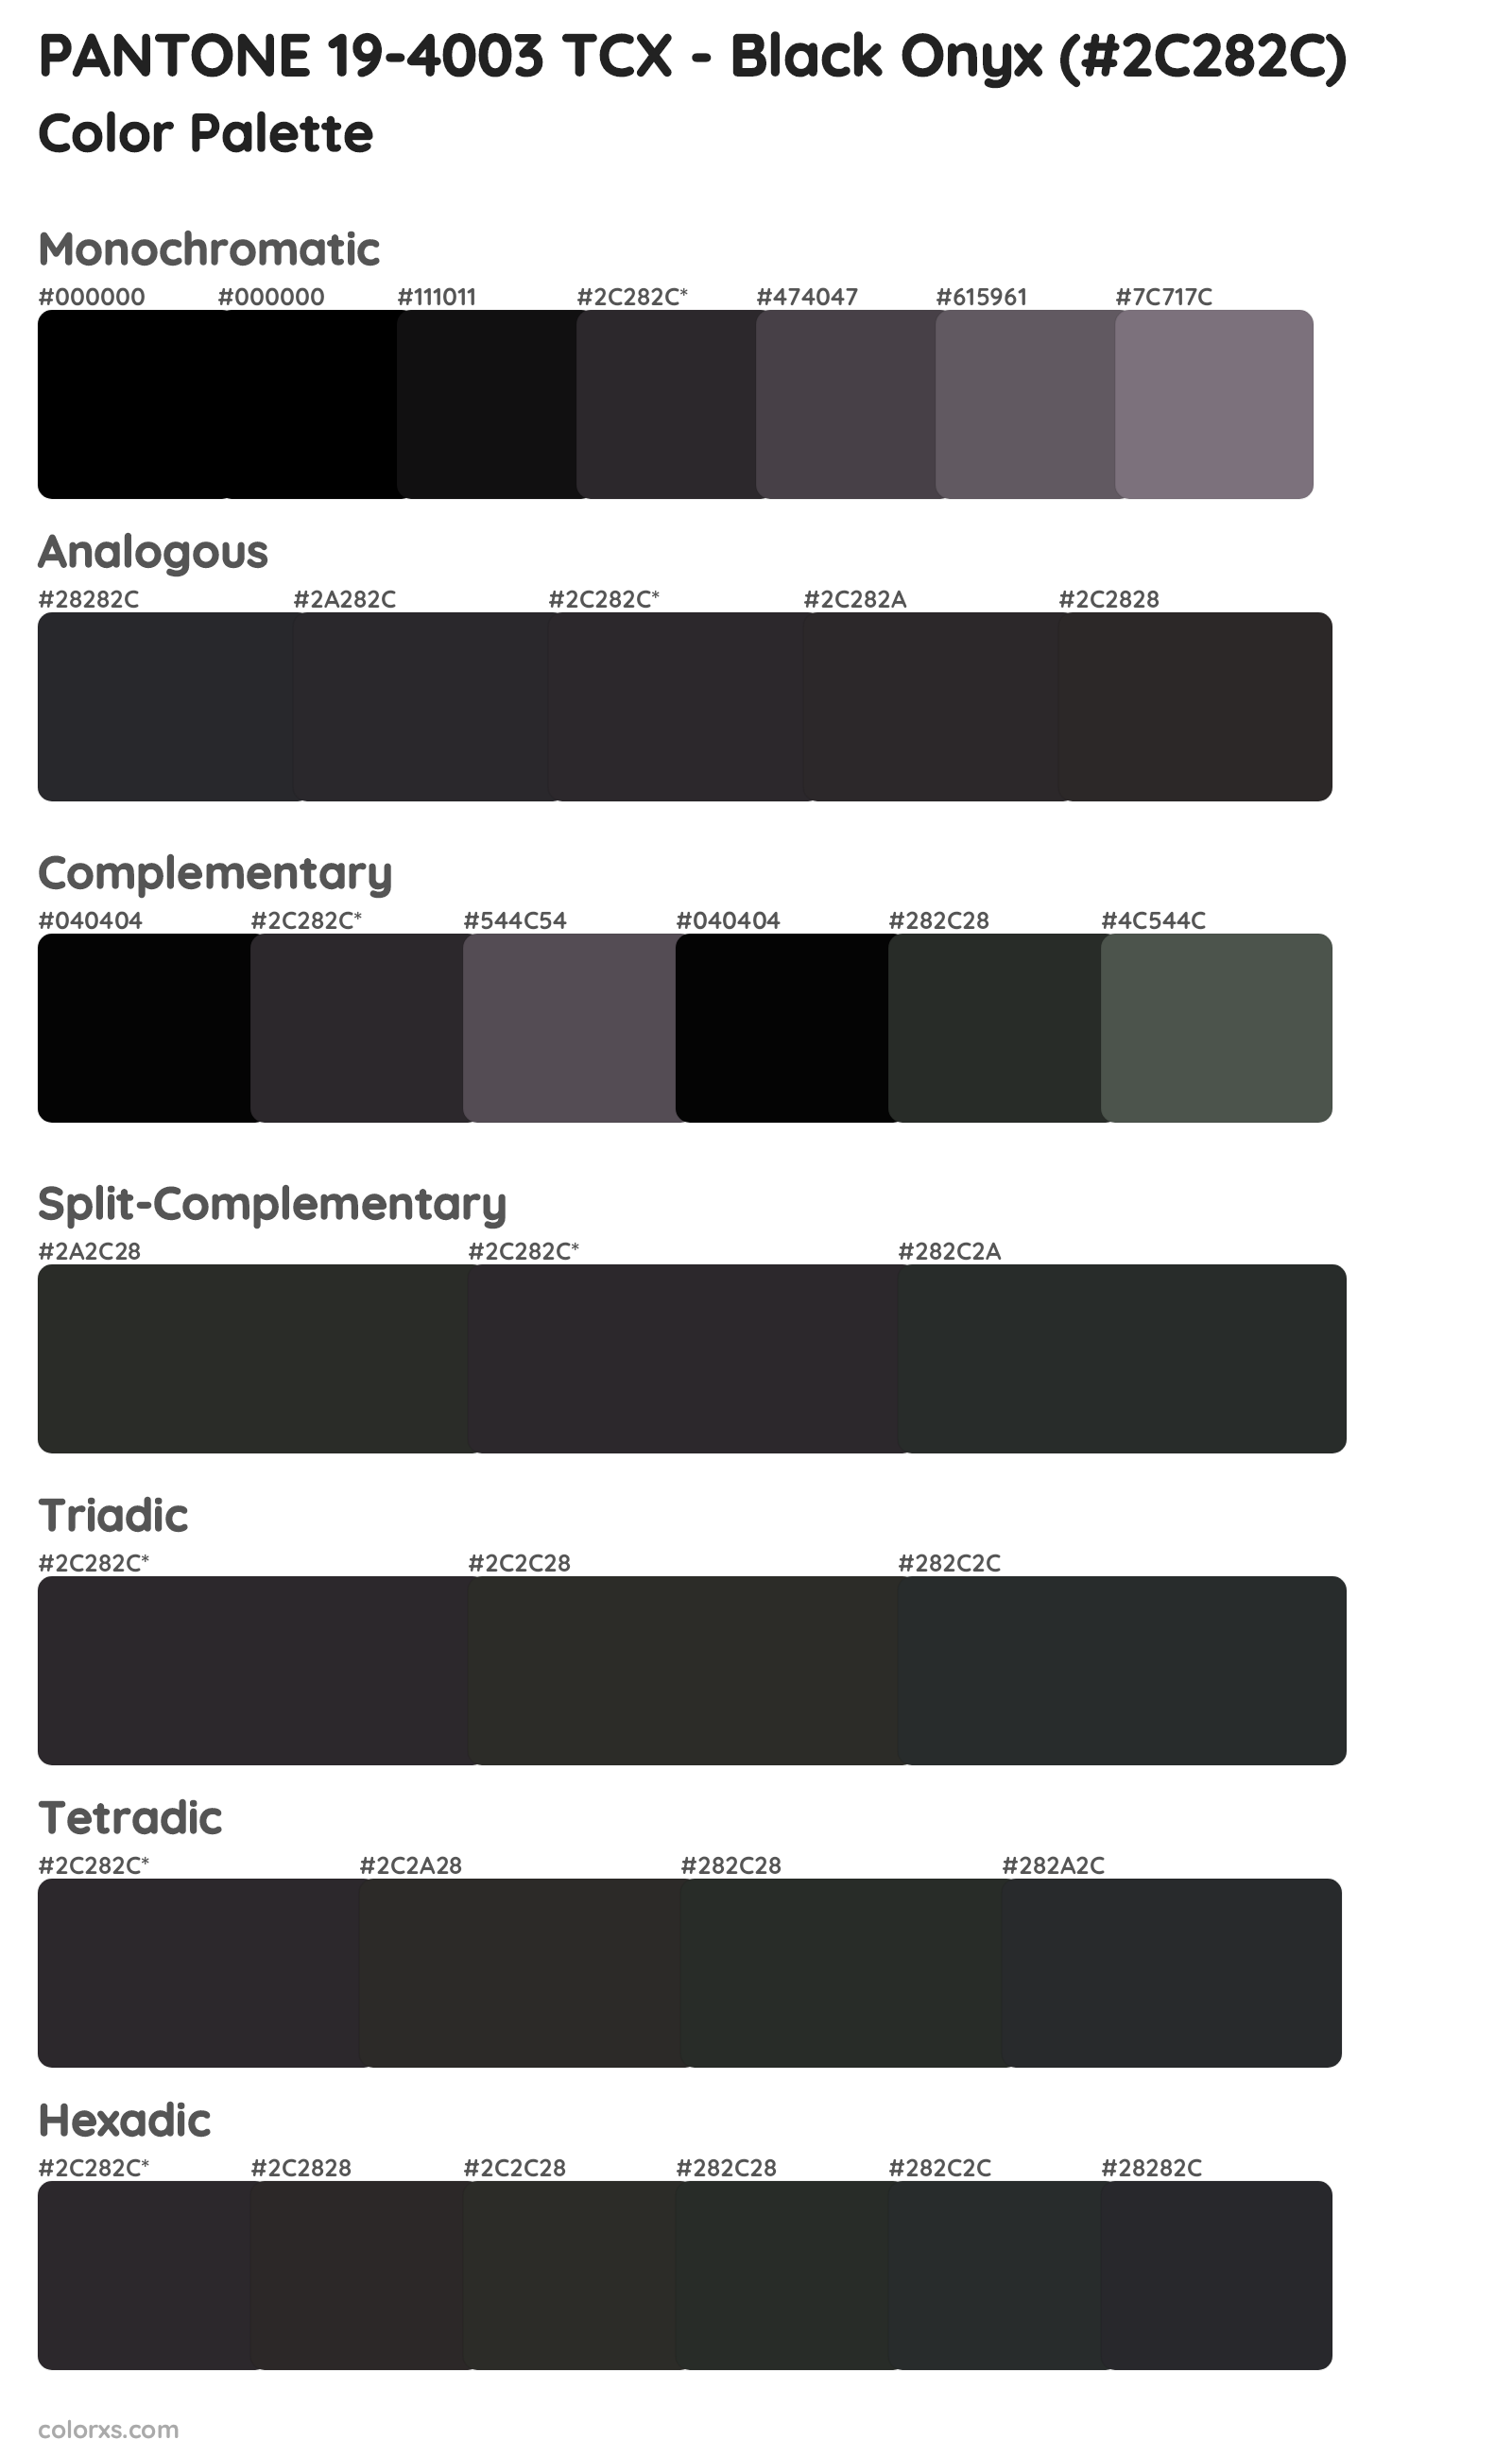 PANTONE 19-4003 TCX - Black Onyx Color Scheme Palettes